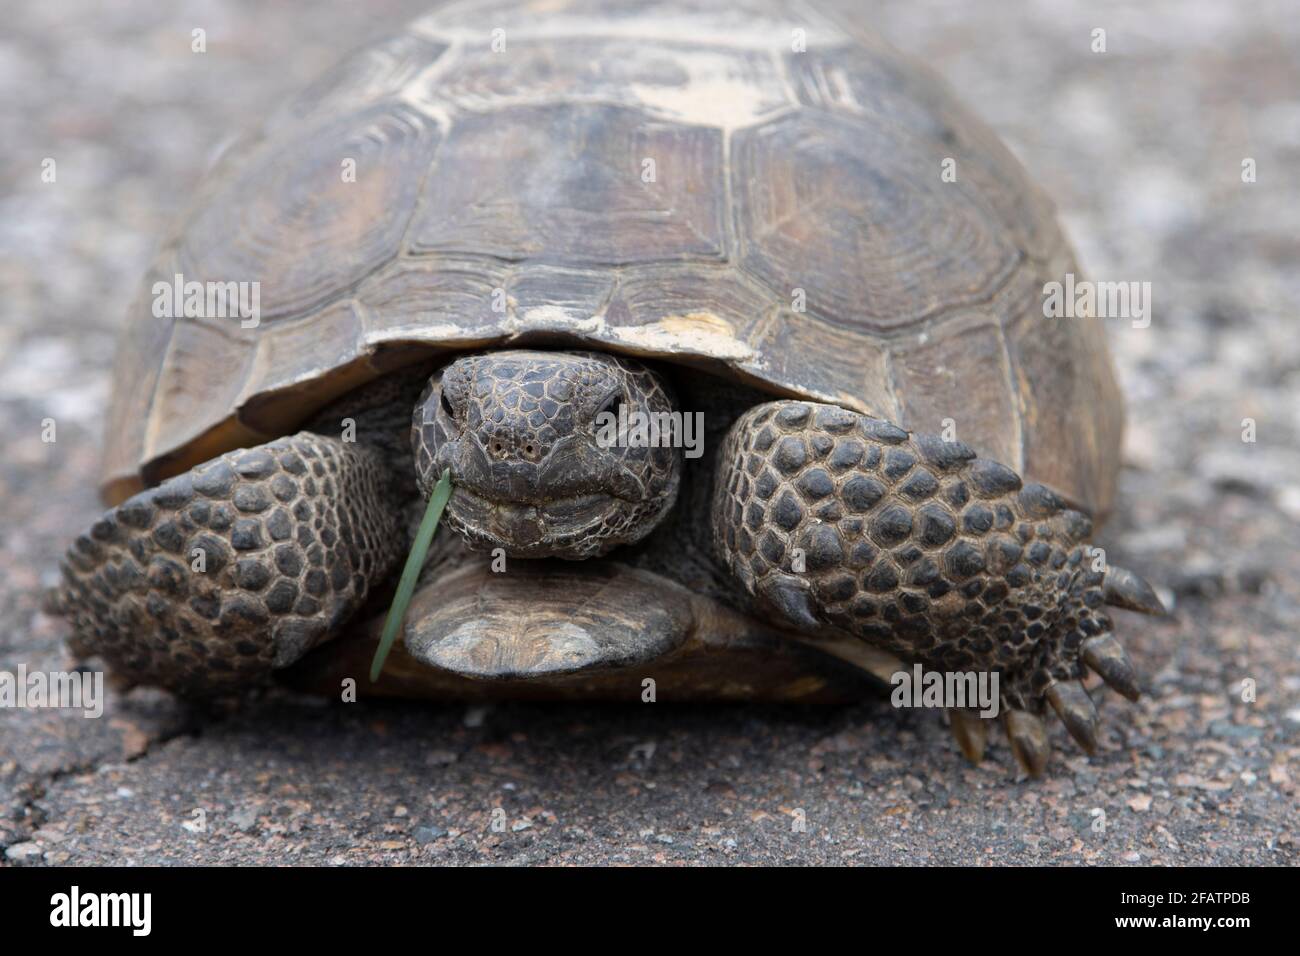 Eine Florida Gopher Tortoise, Gopherus polyphemus, macht eine Pause, um ein grünes Blatt zu kauen, während sie eine verlassene Landstraße überquert. Stockfoto